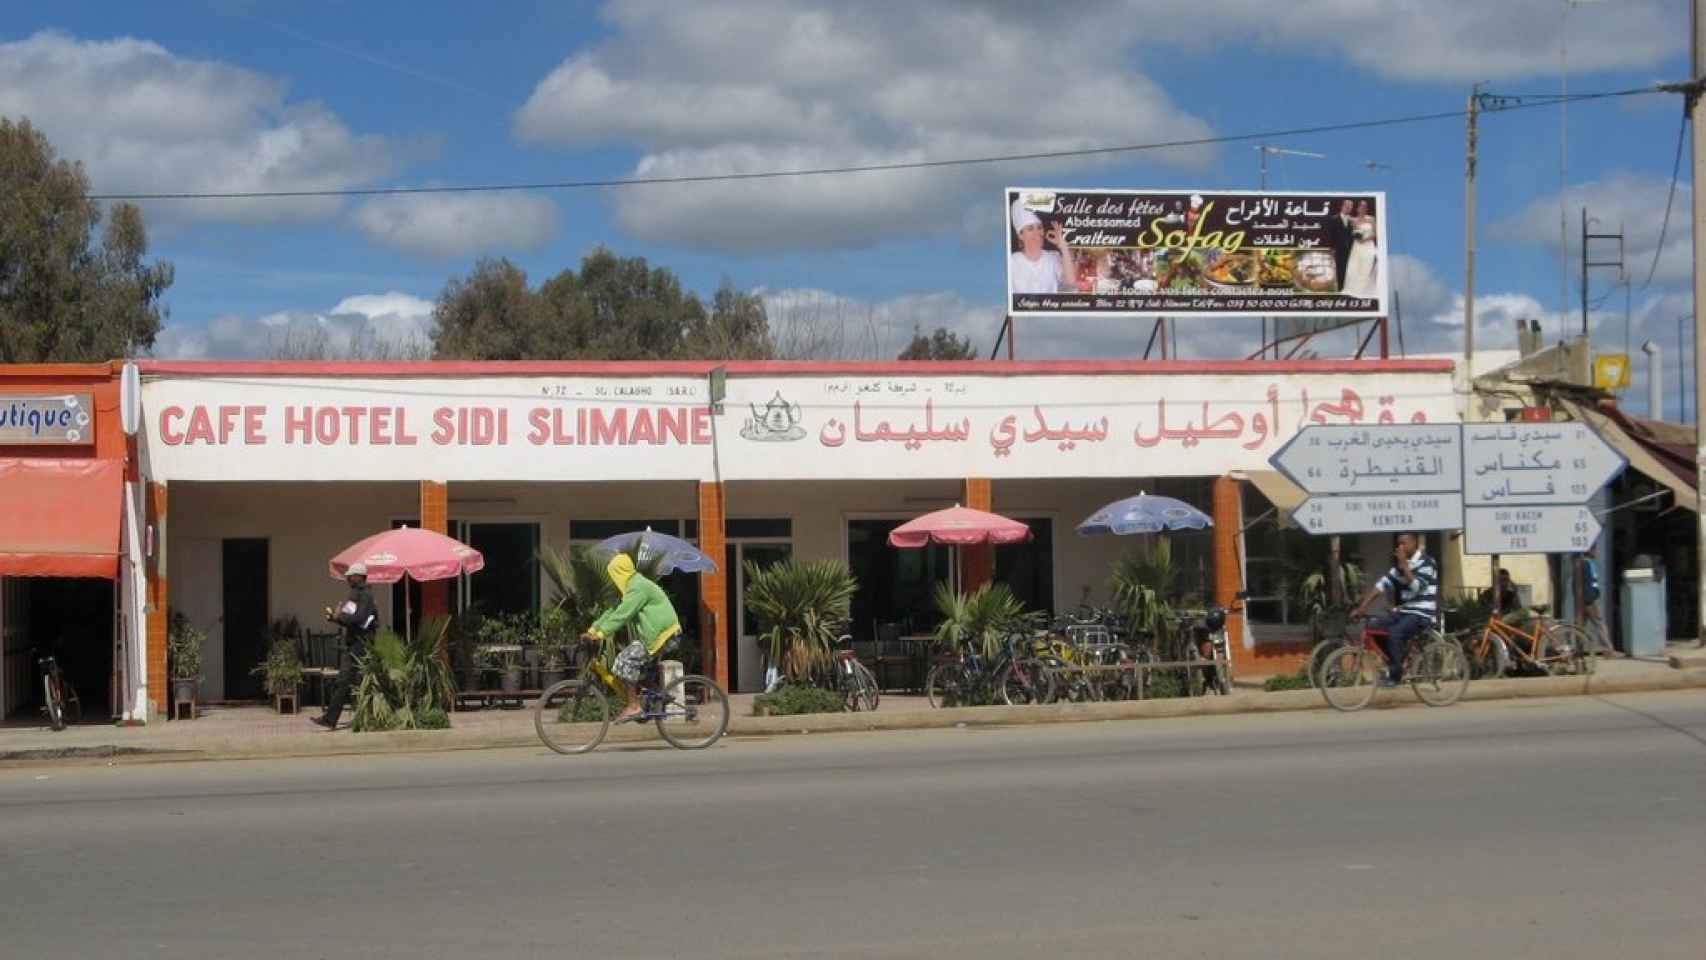 La ciudad de Sidi Slimane tiene más de 100.000 habitantes